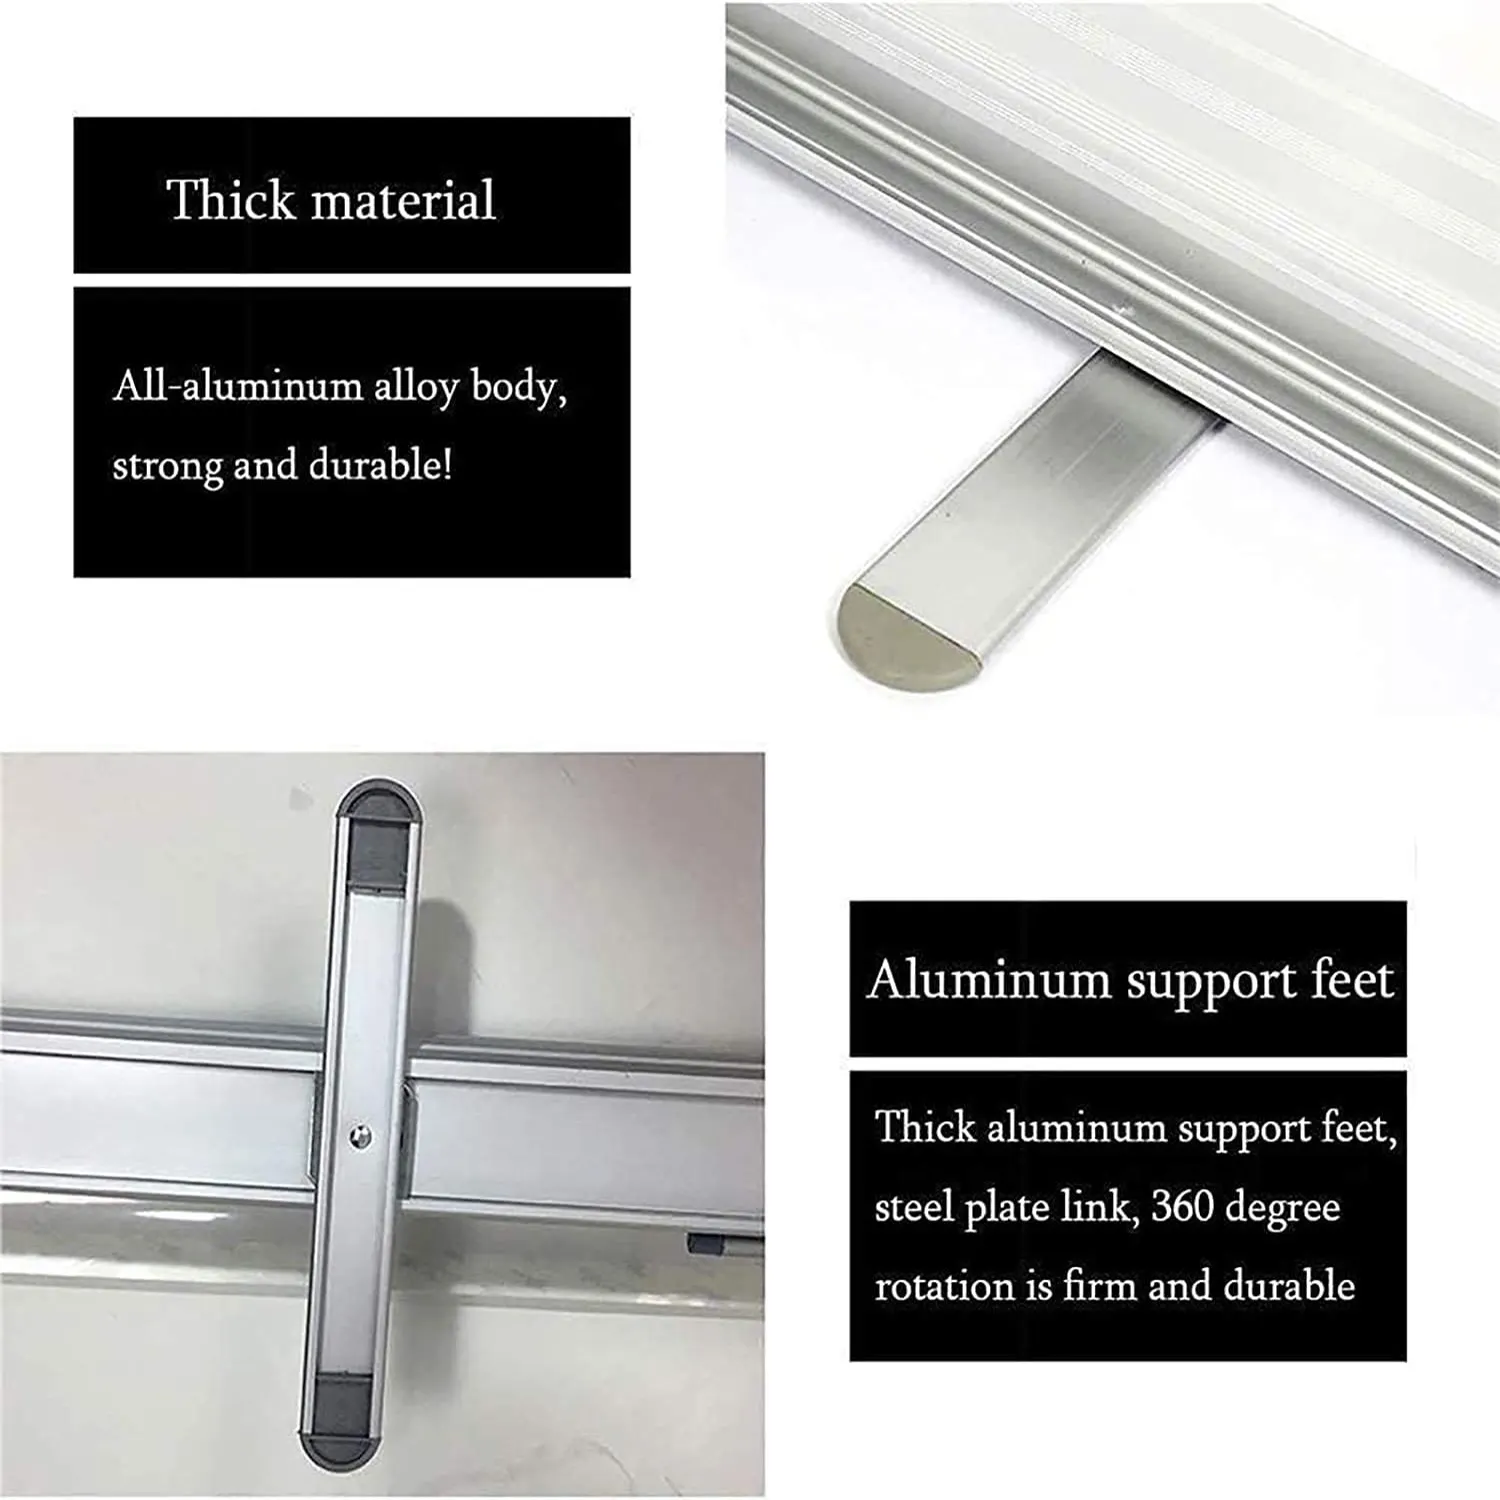 Marco de exhibición de aluminio para publicidad, cartel retráctil enrollable, fácil de llevar, 80x180cm